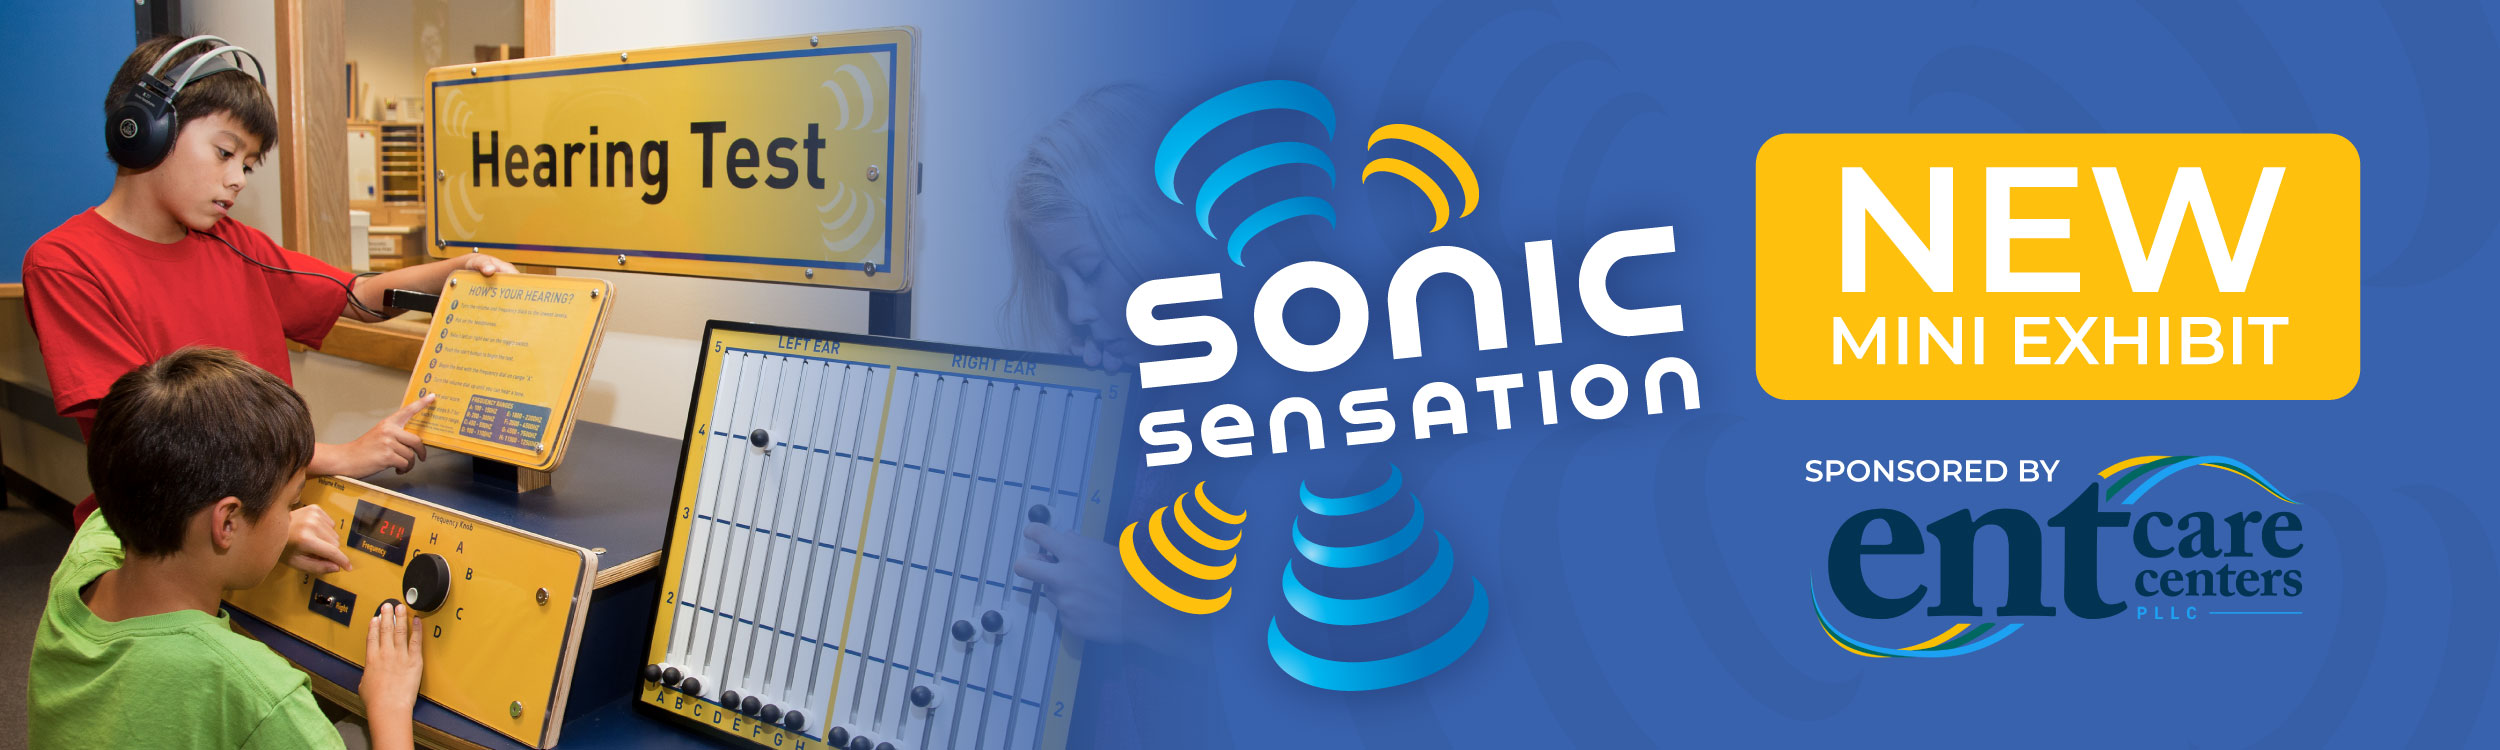 Sonic Sensation Exhibit